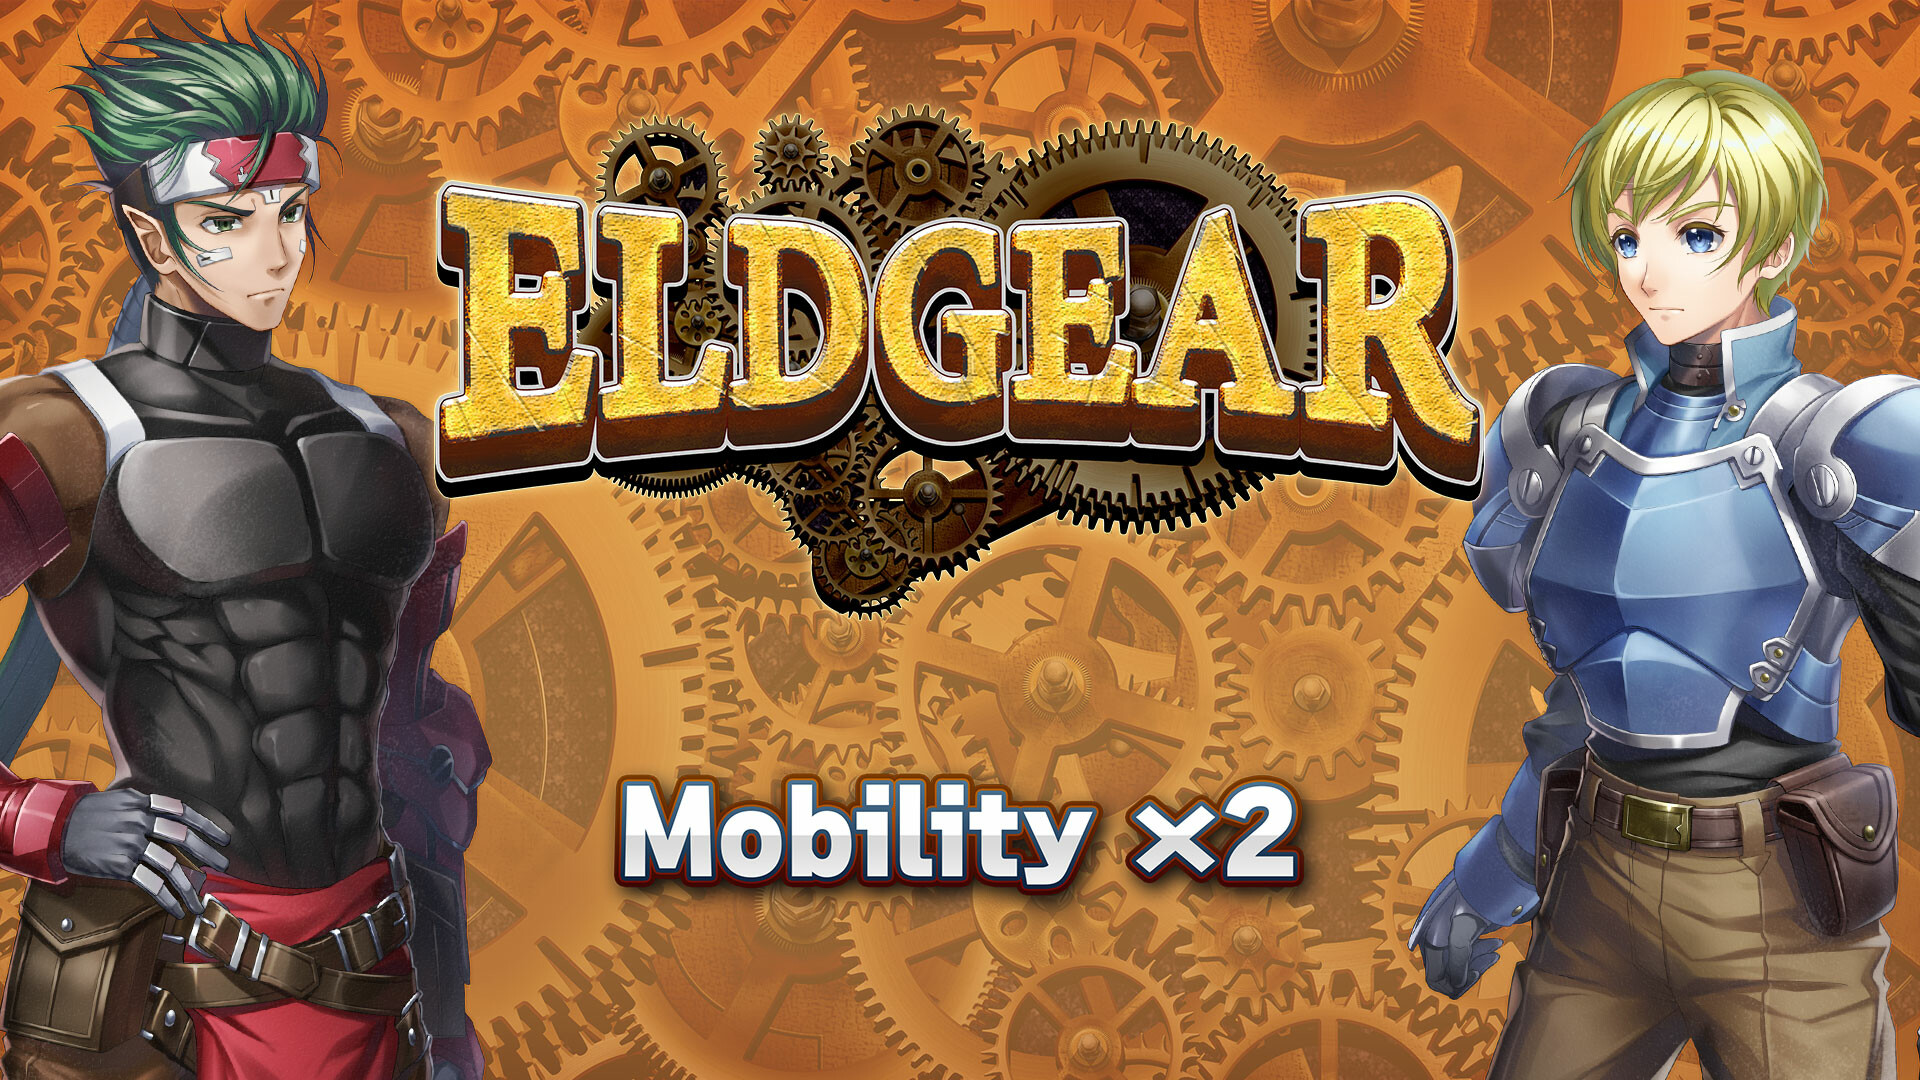 Mobility x2 - Eldgear Featured Screenshot #1